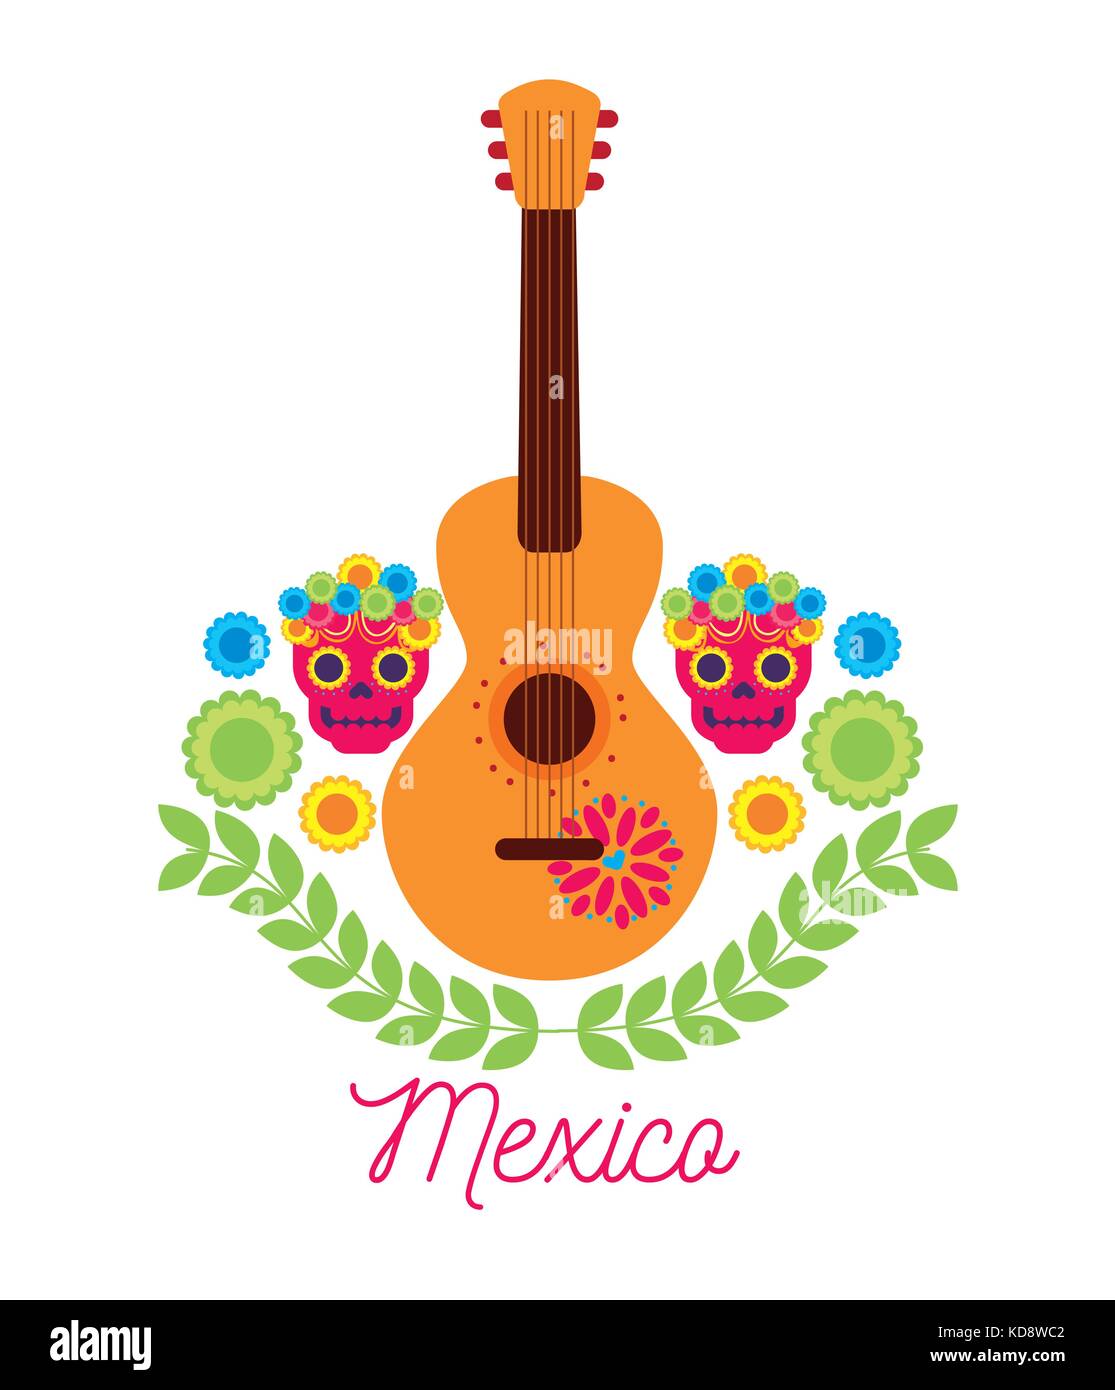 mexico music guitar skulls flower celebration Stock Vector